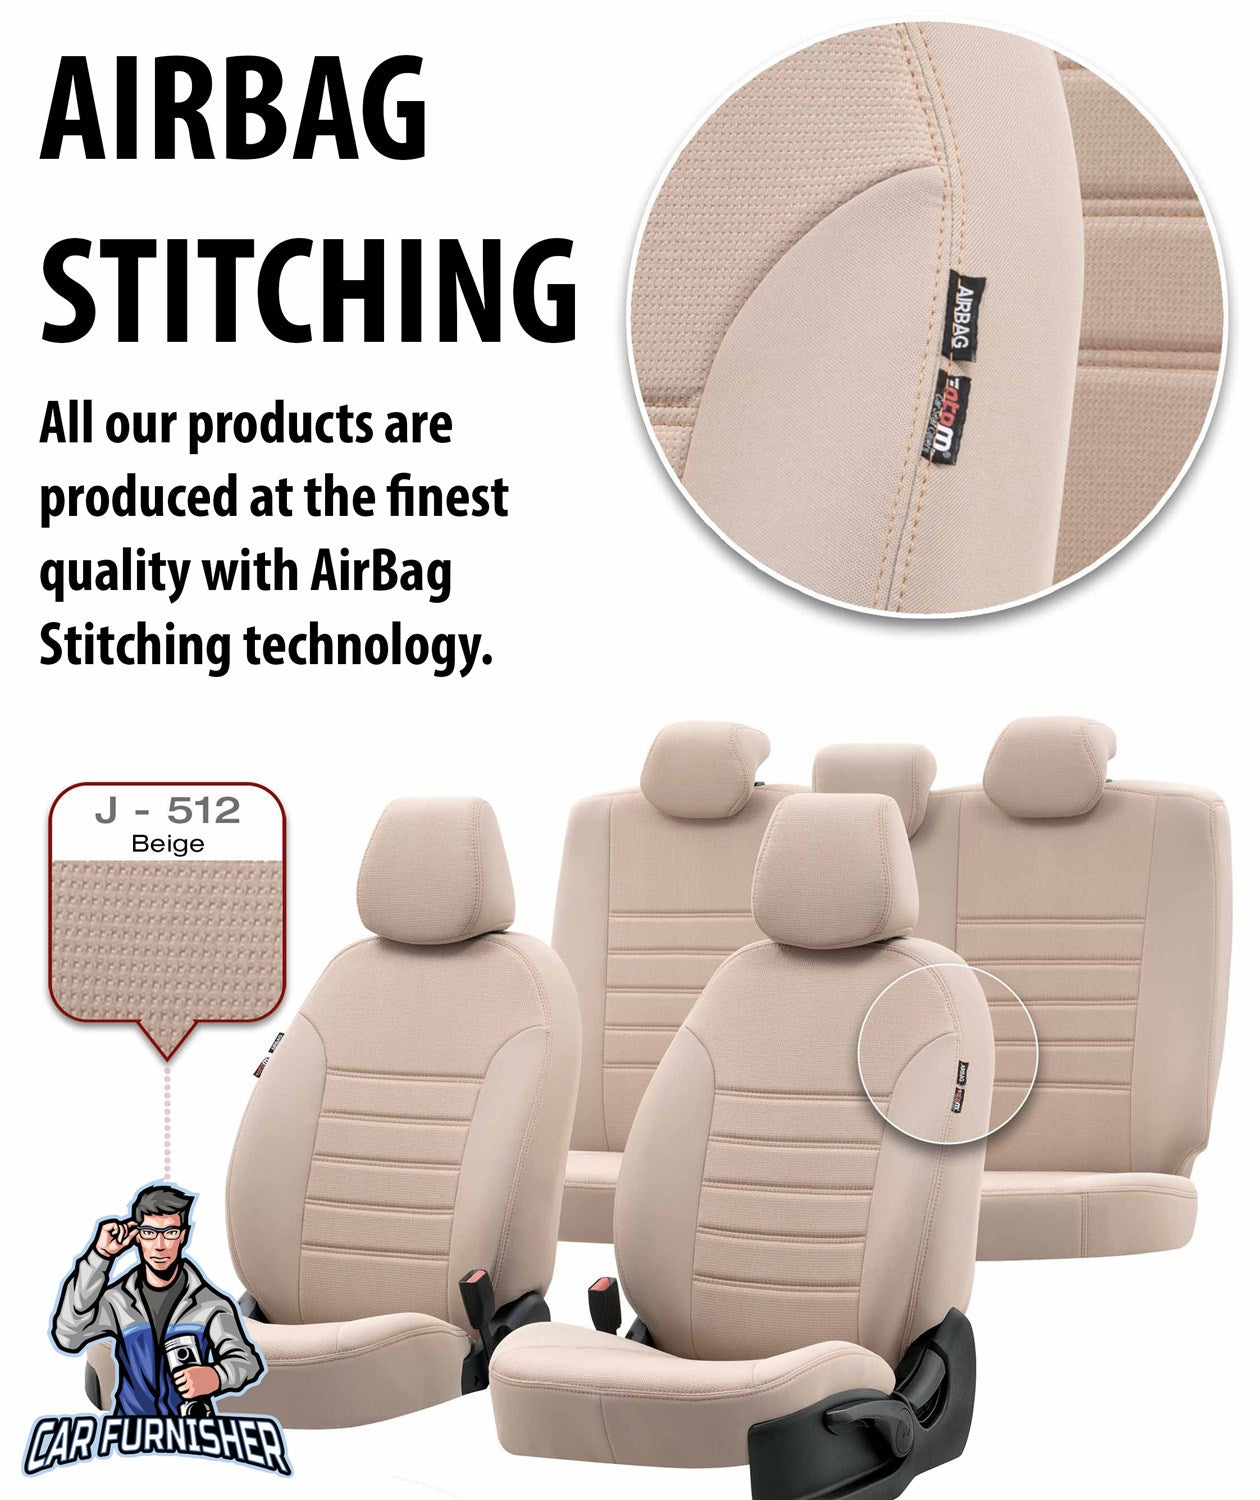 Mini Countryman Seat Covers Original Jacquard Design Smoked Black Jacquard Fabric